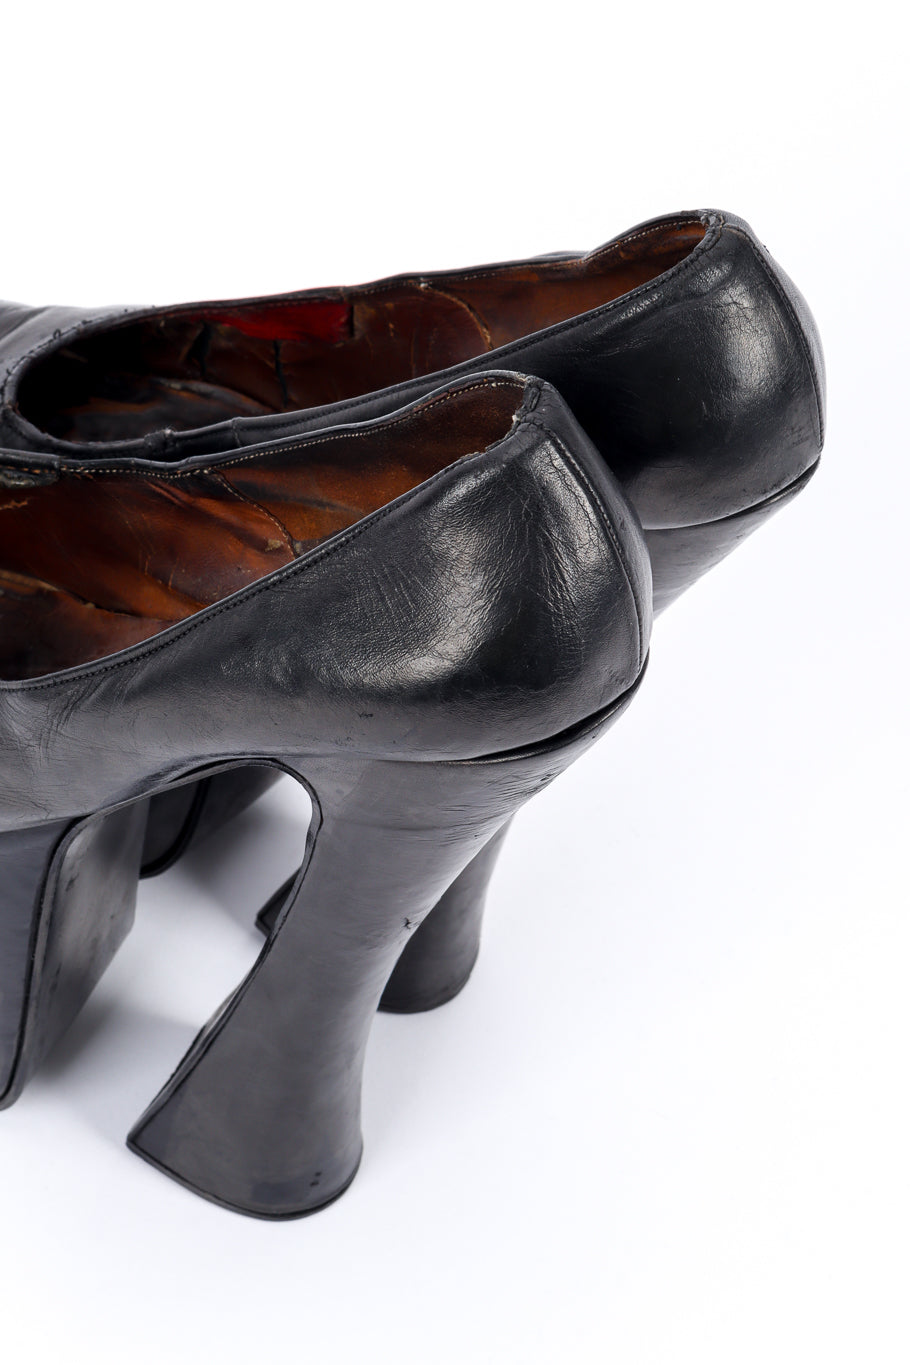 Vintage Vivienne Westwood 1993 F/W Super Elevated Leather Court Shoe back heel @recessla